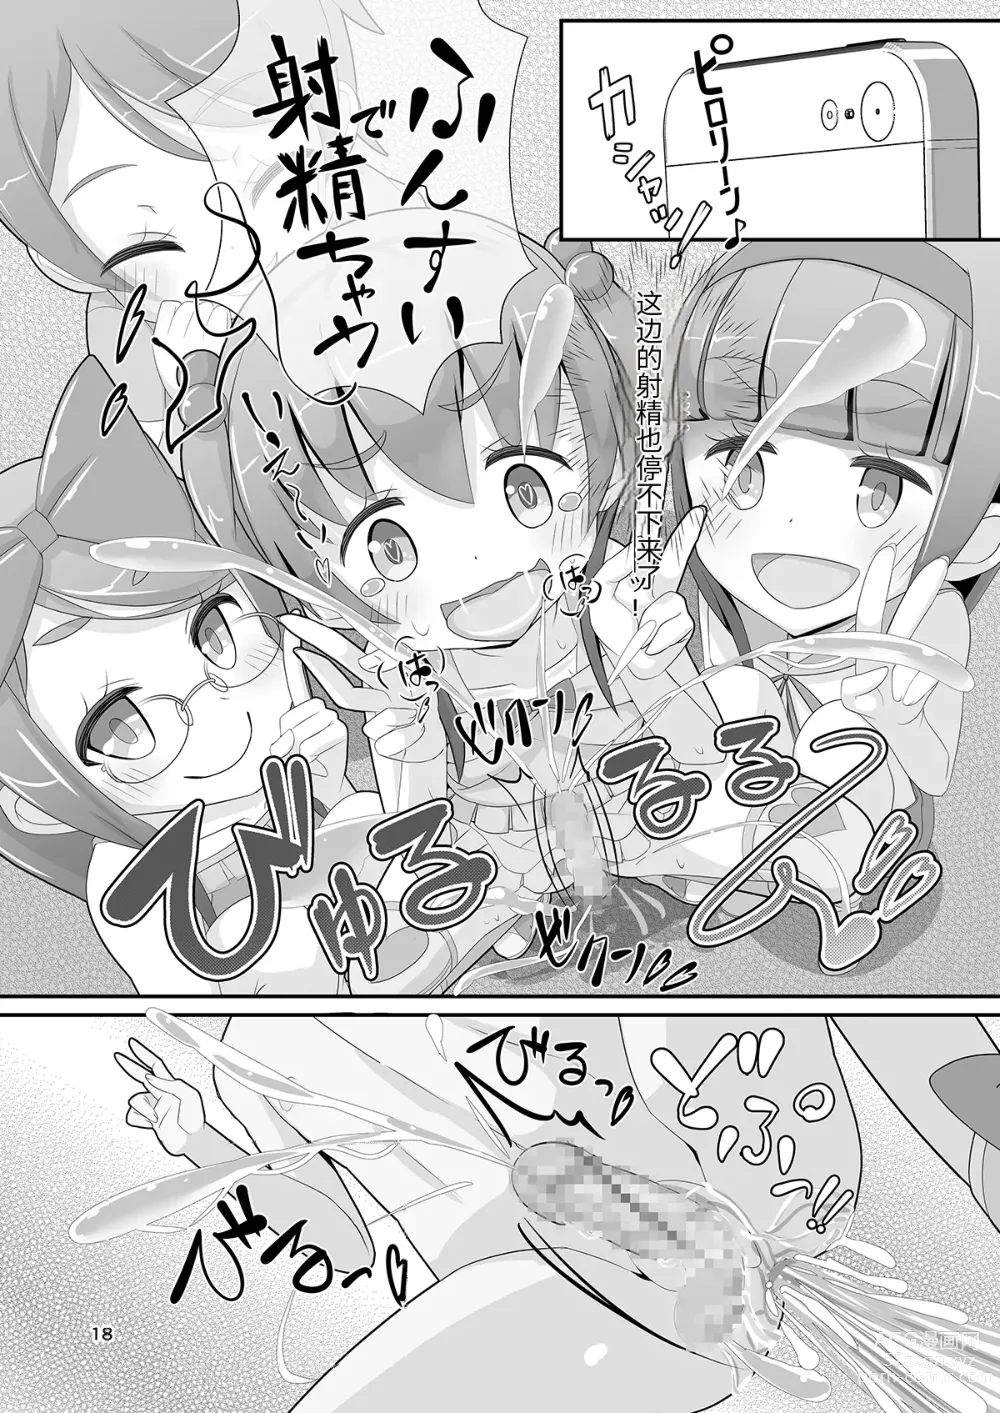 Page 21 of doujinshi Sensei! Kouen de Jojisou Shite mite!